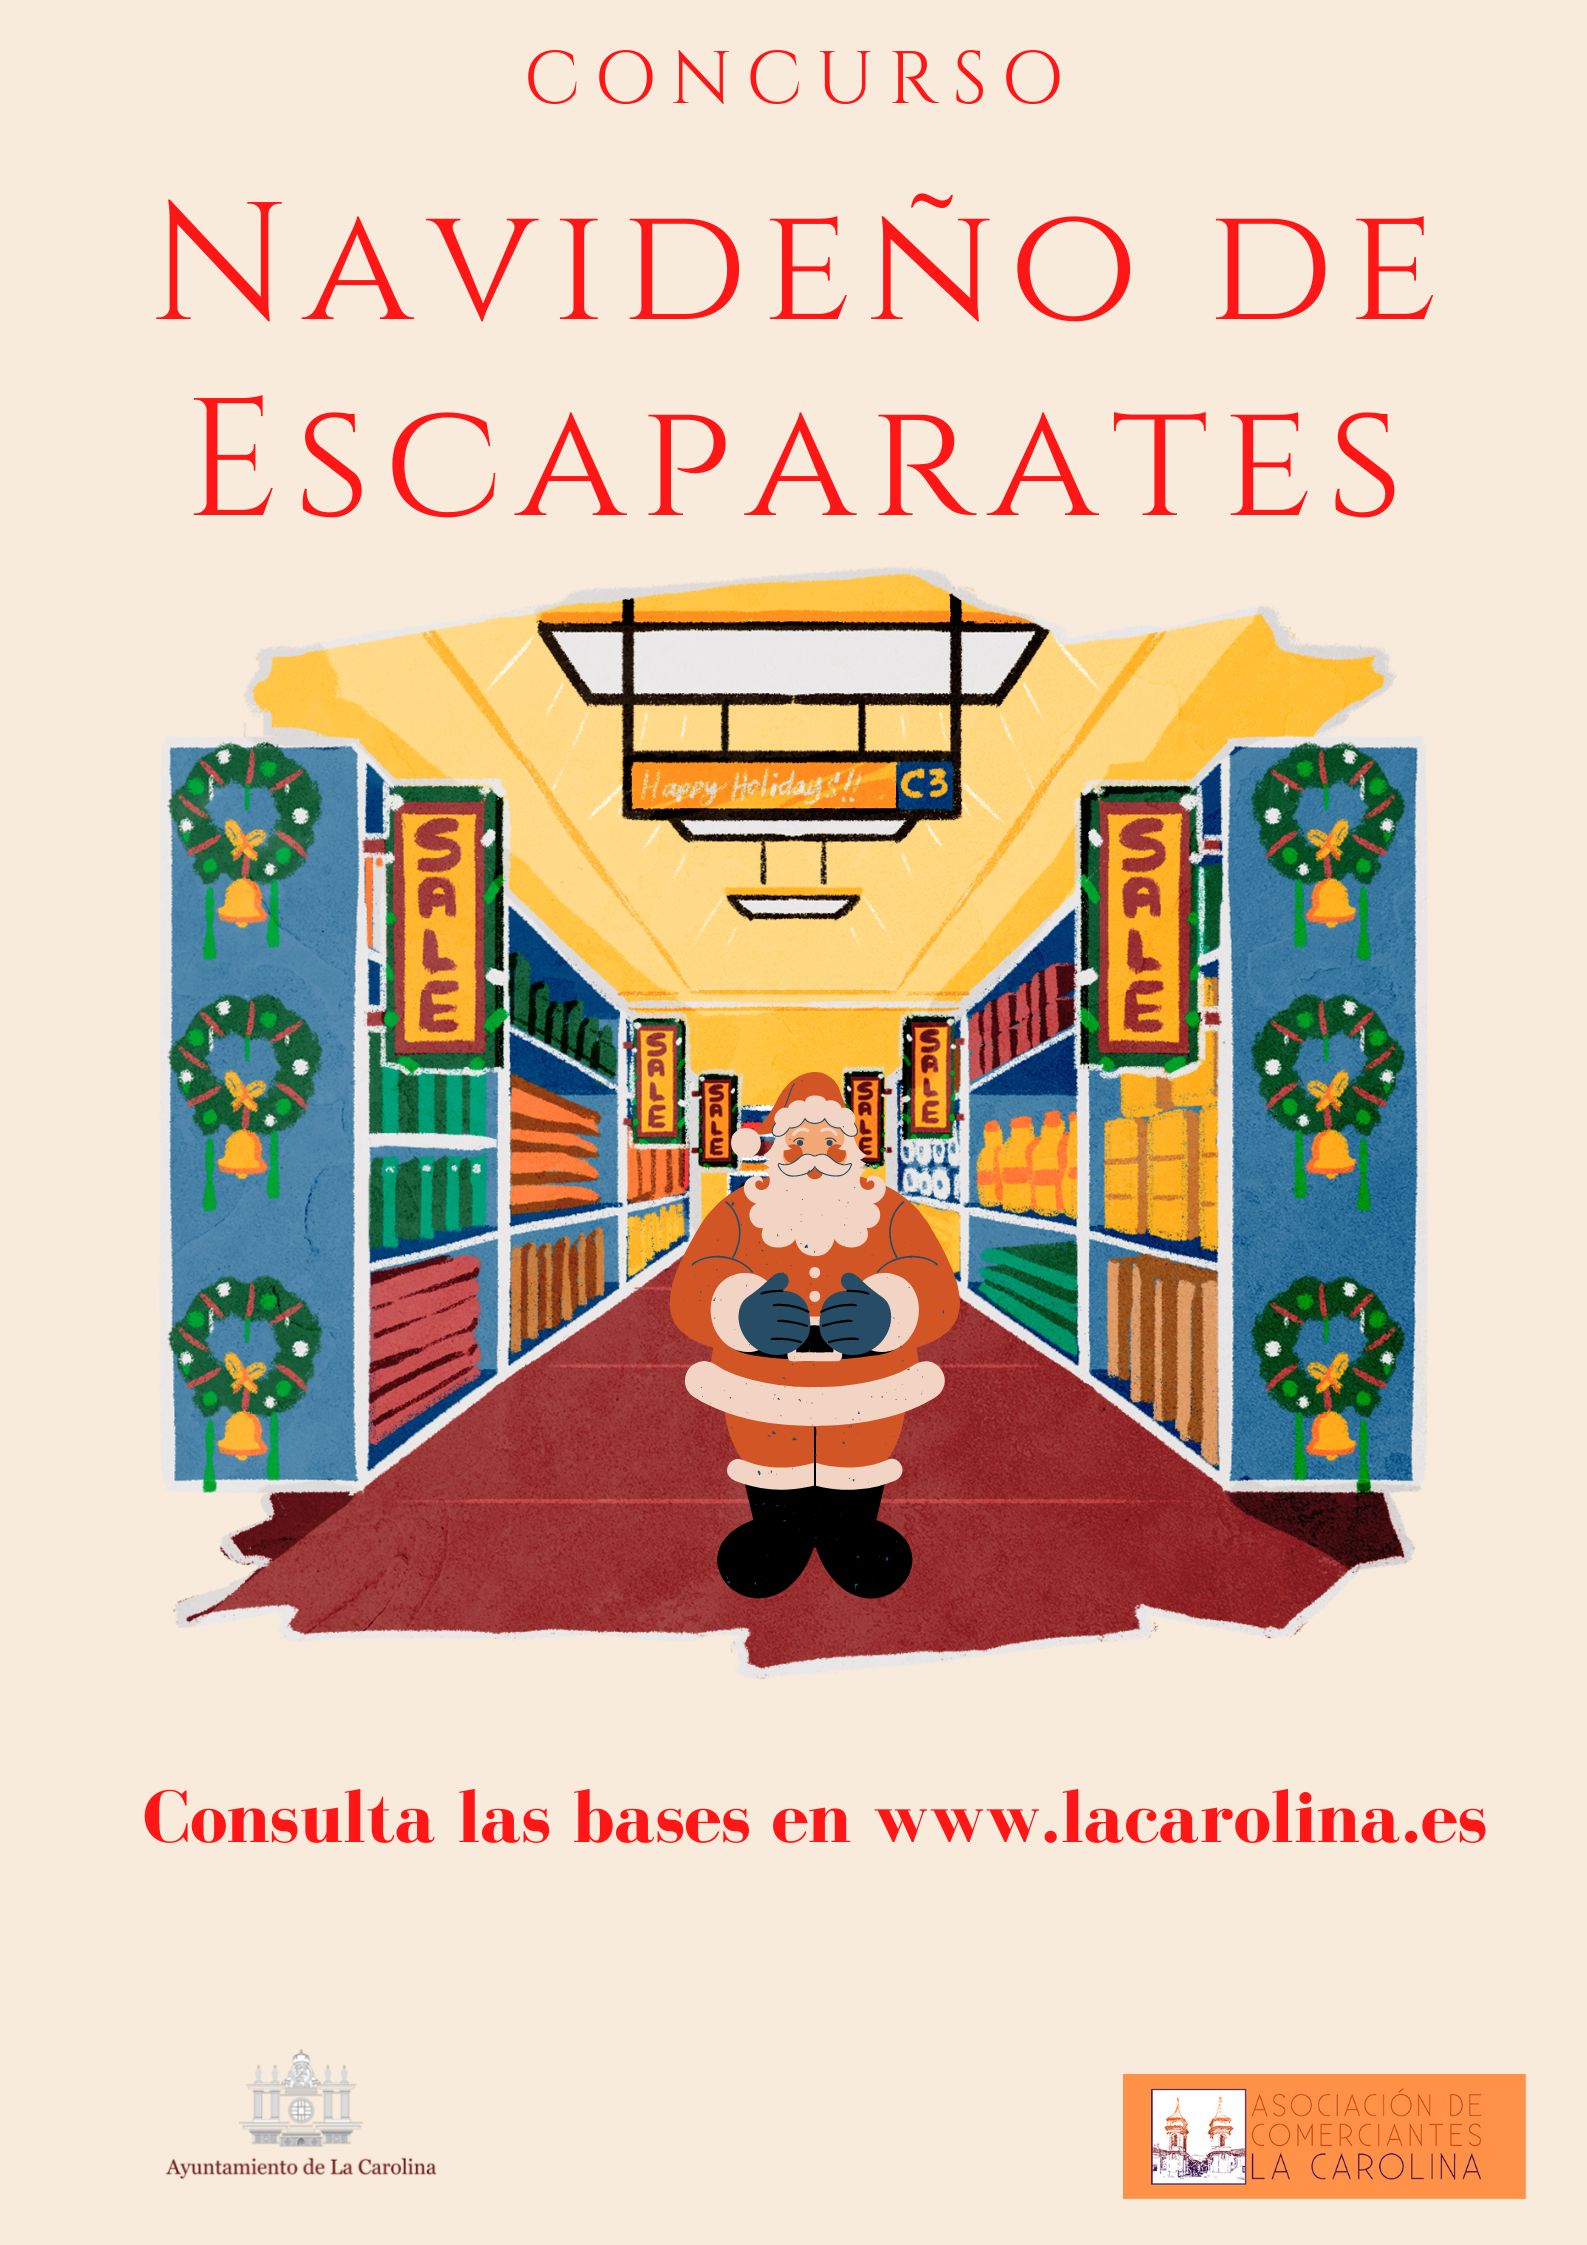 Concurso_de_escaparates_navidad_22.jpg